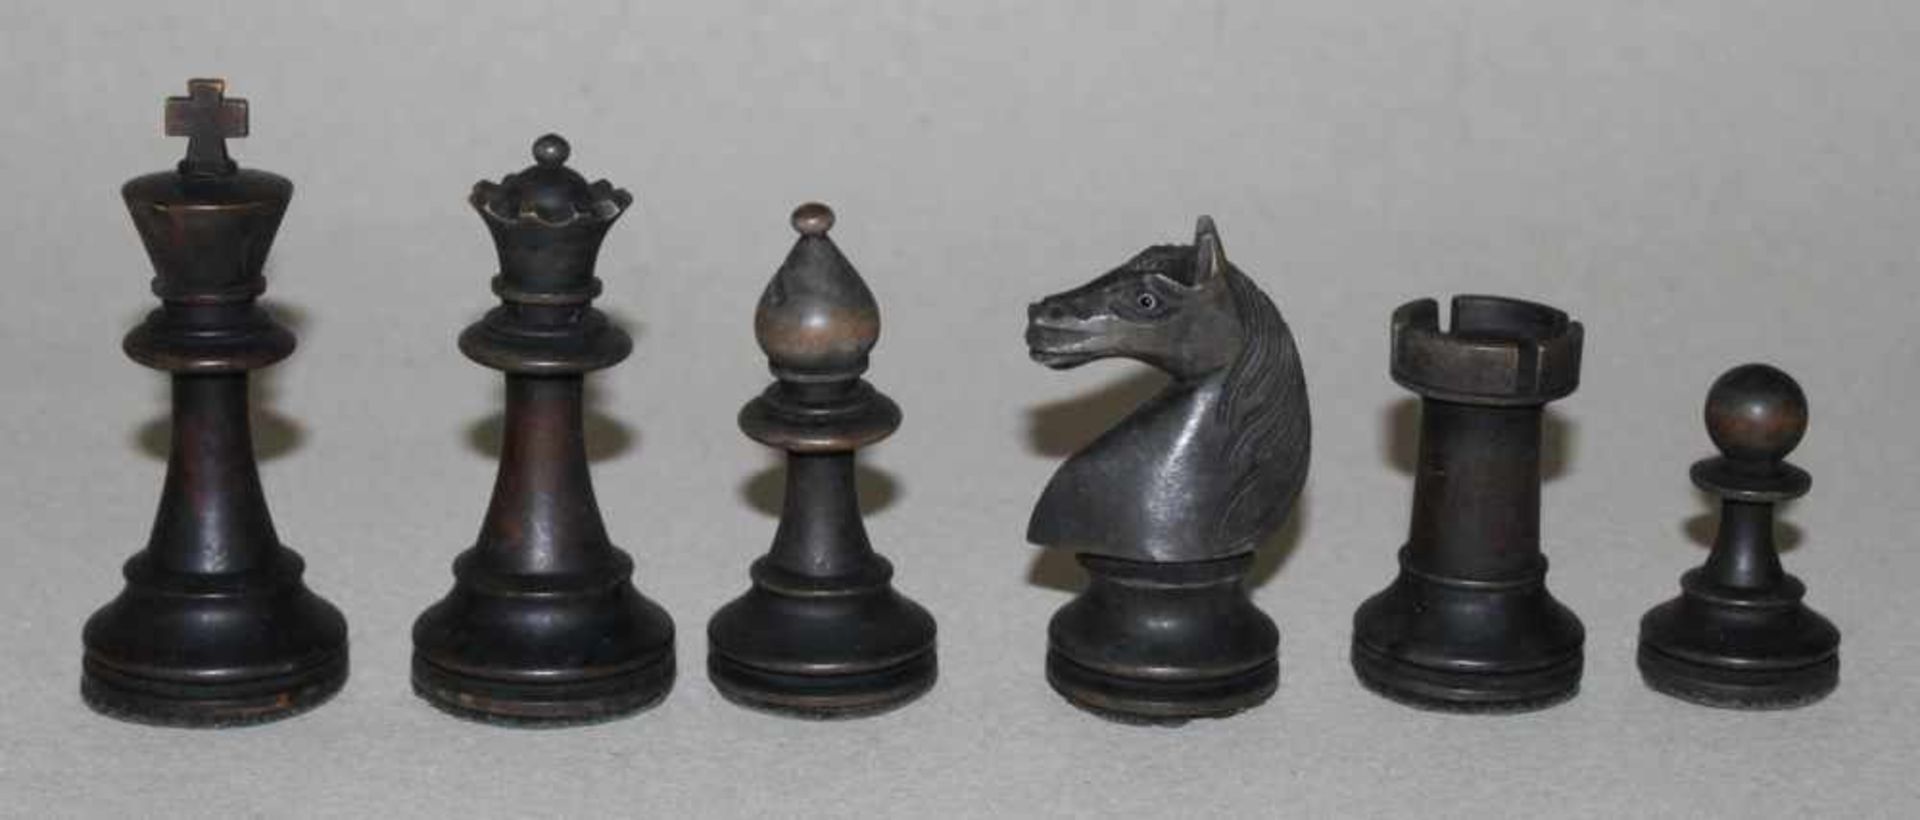 Europa. Schachfiguren aus Holz,in Anlehnung an den Staunton - Stil mit Schachbrett aus Holz. Eine - Bild 3 aus 3